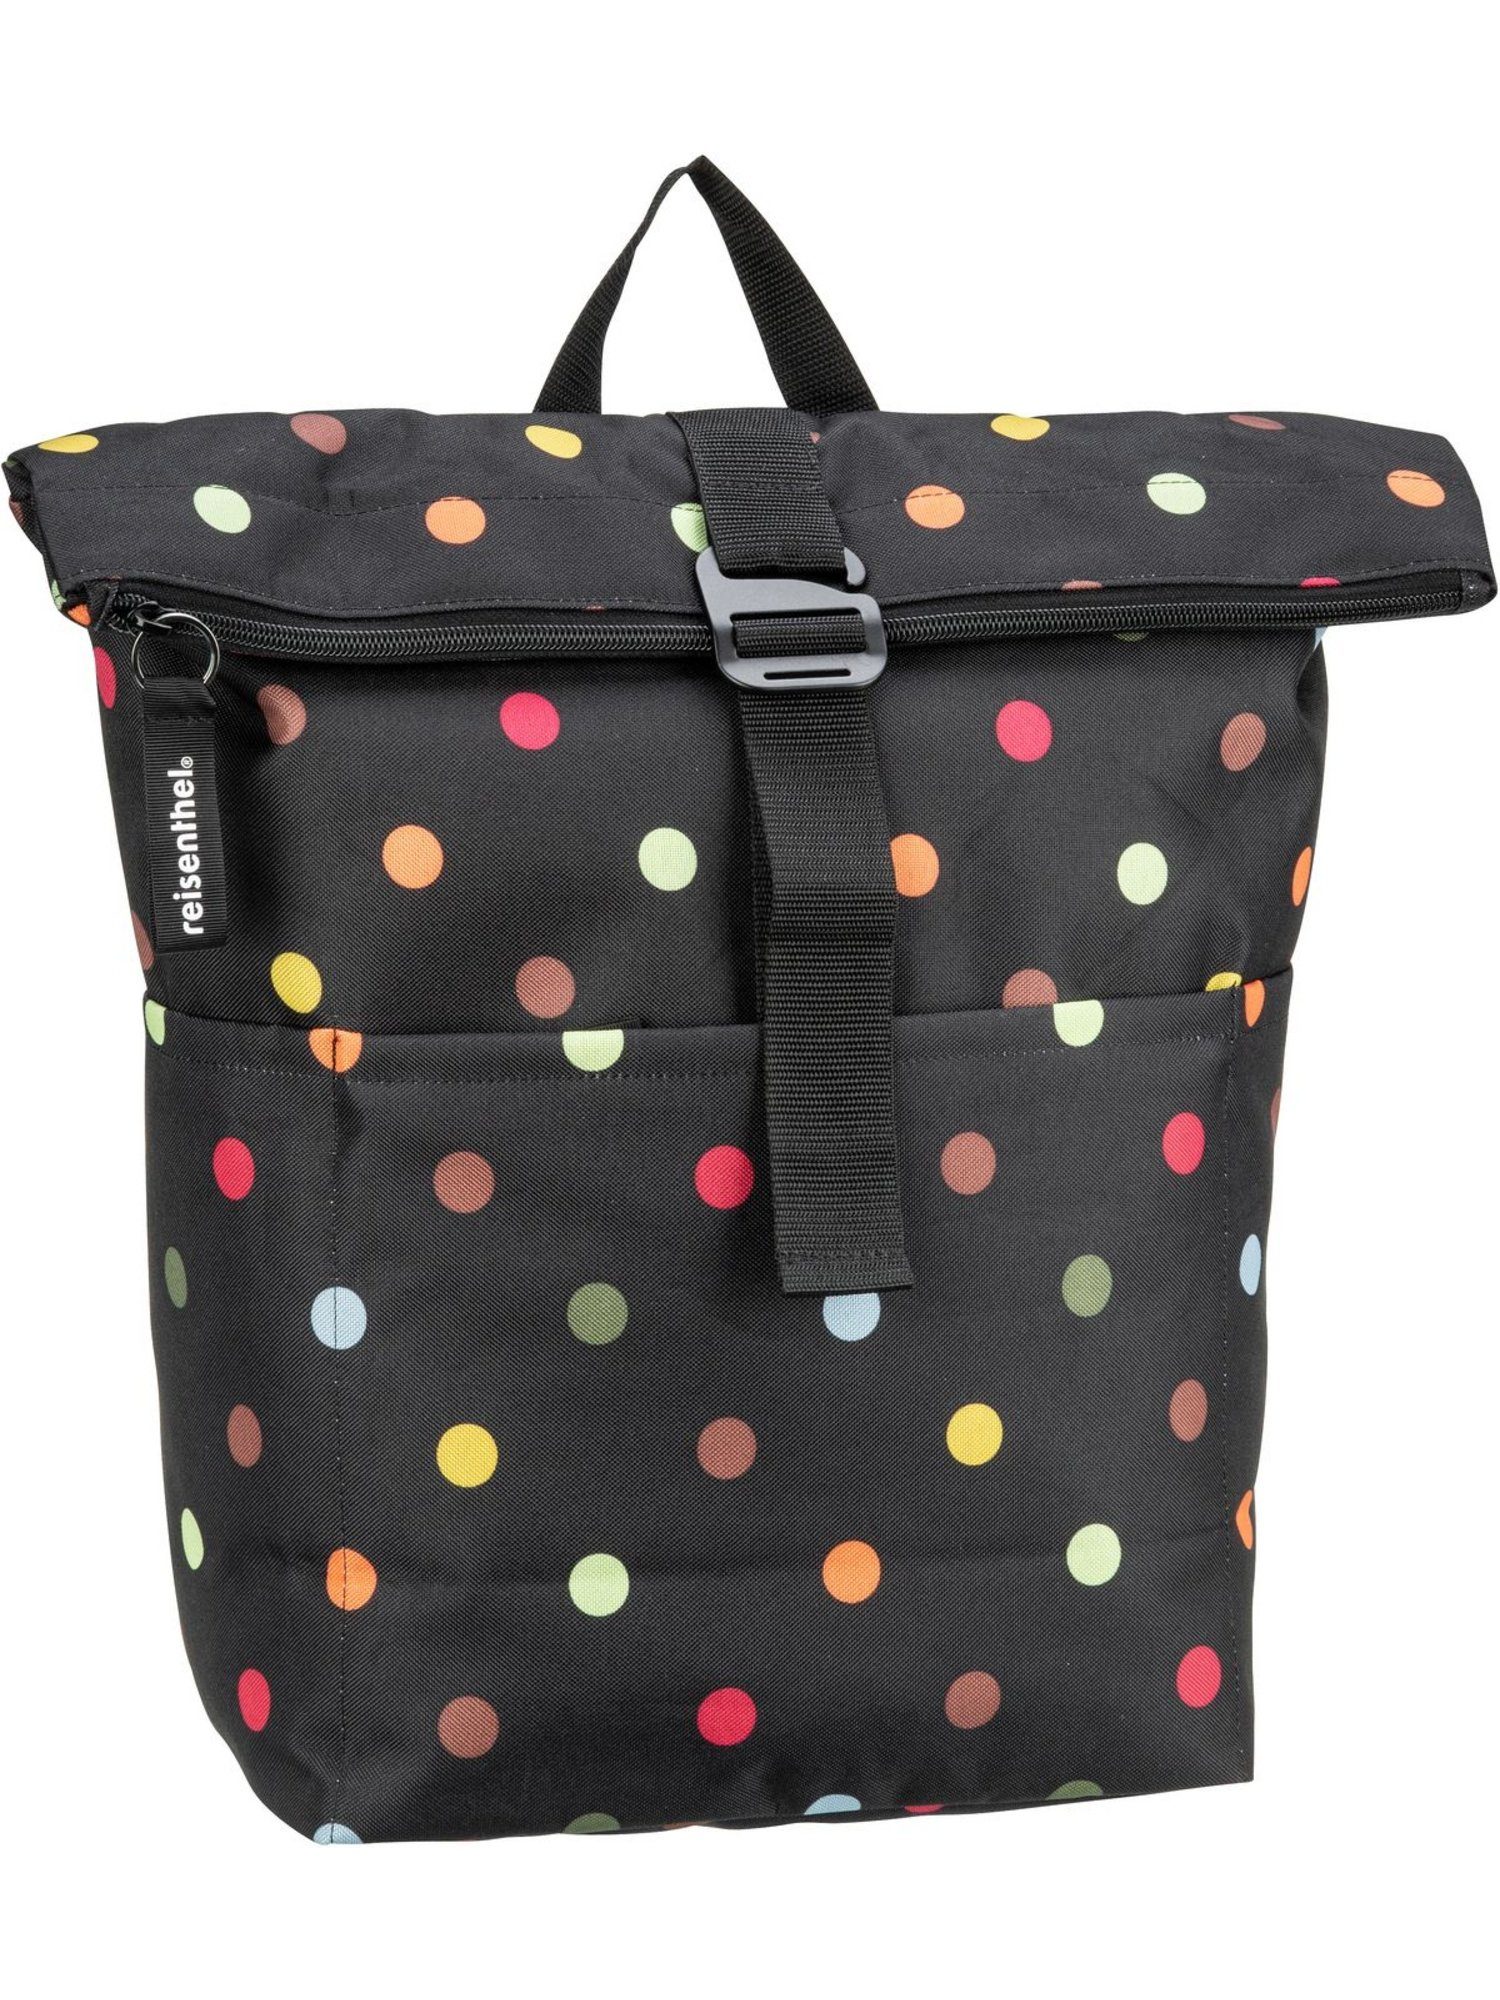 REISENTHEL® Packsack rolltop backpack